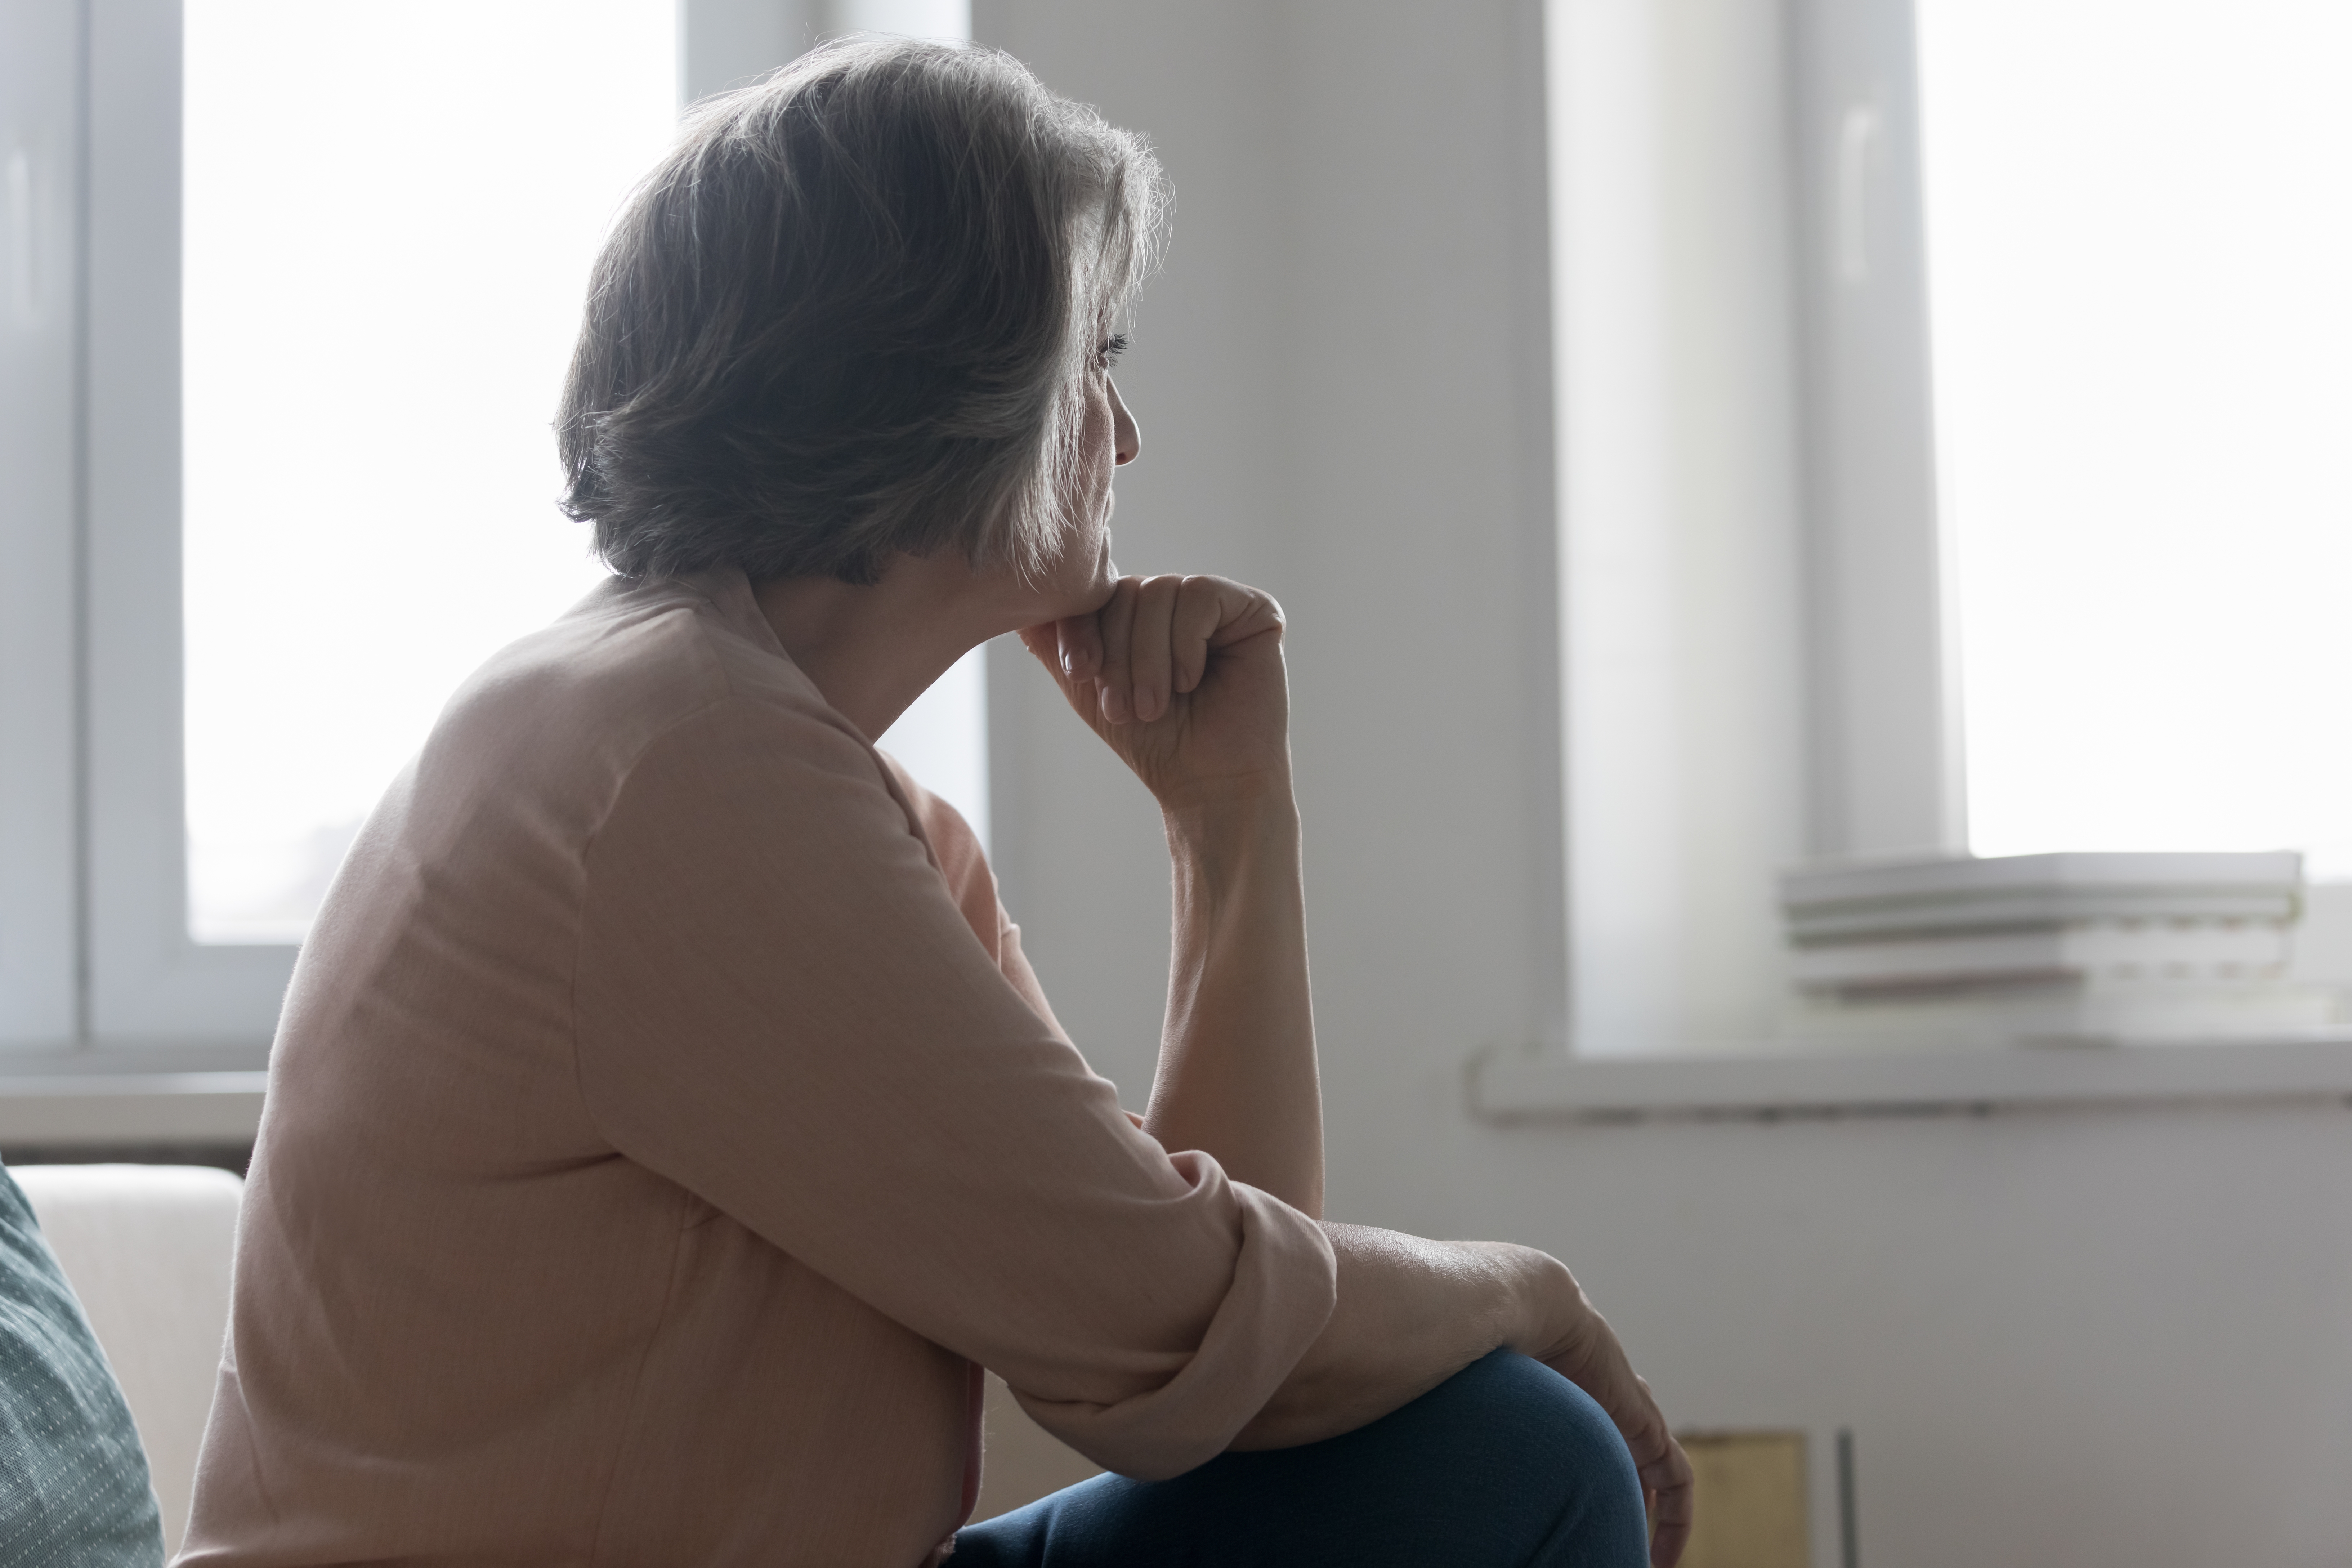 Une femme âgée regarde avec nostalgie la fenêtre alors que quelqu'un lui manque | Source : Shutterstock